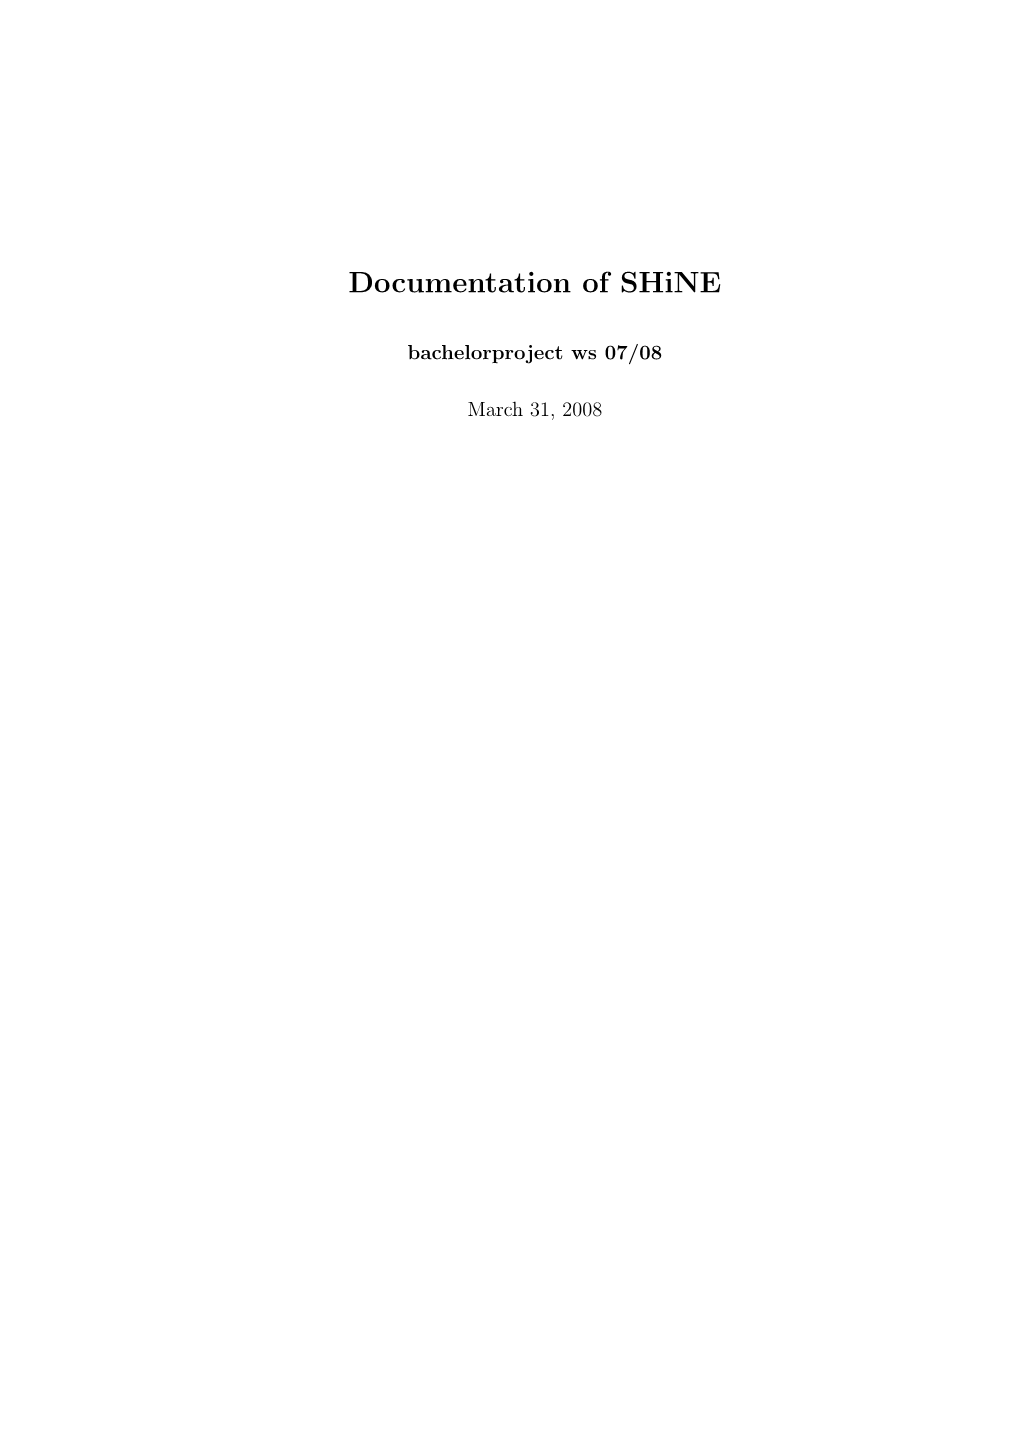 Documentation of Shine